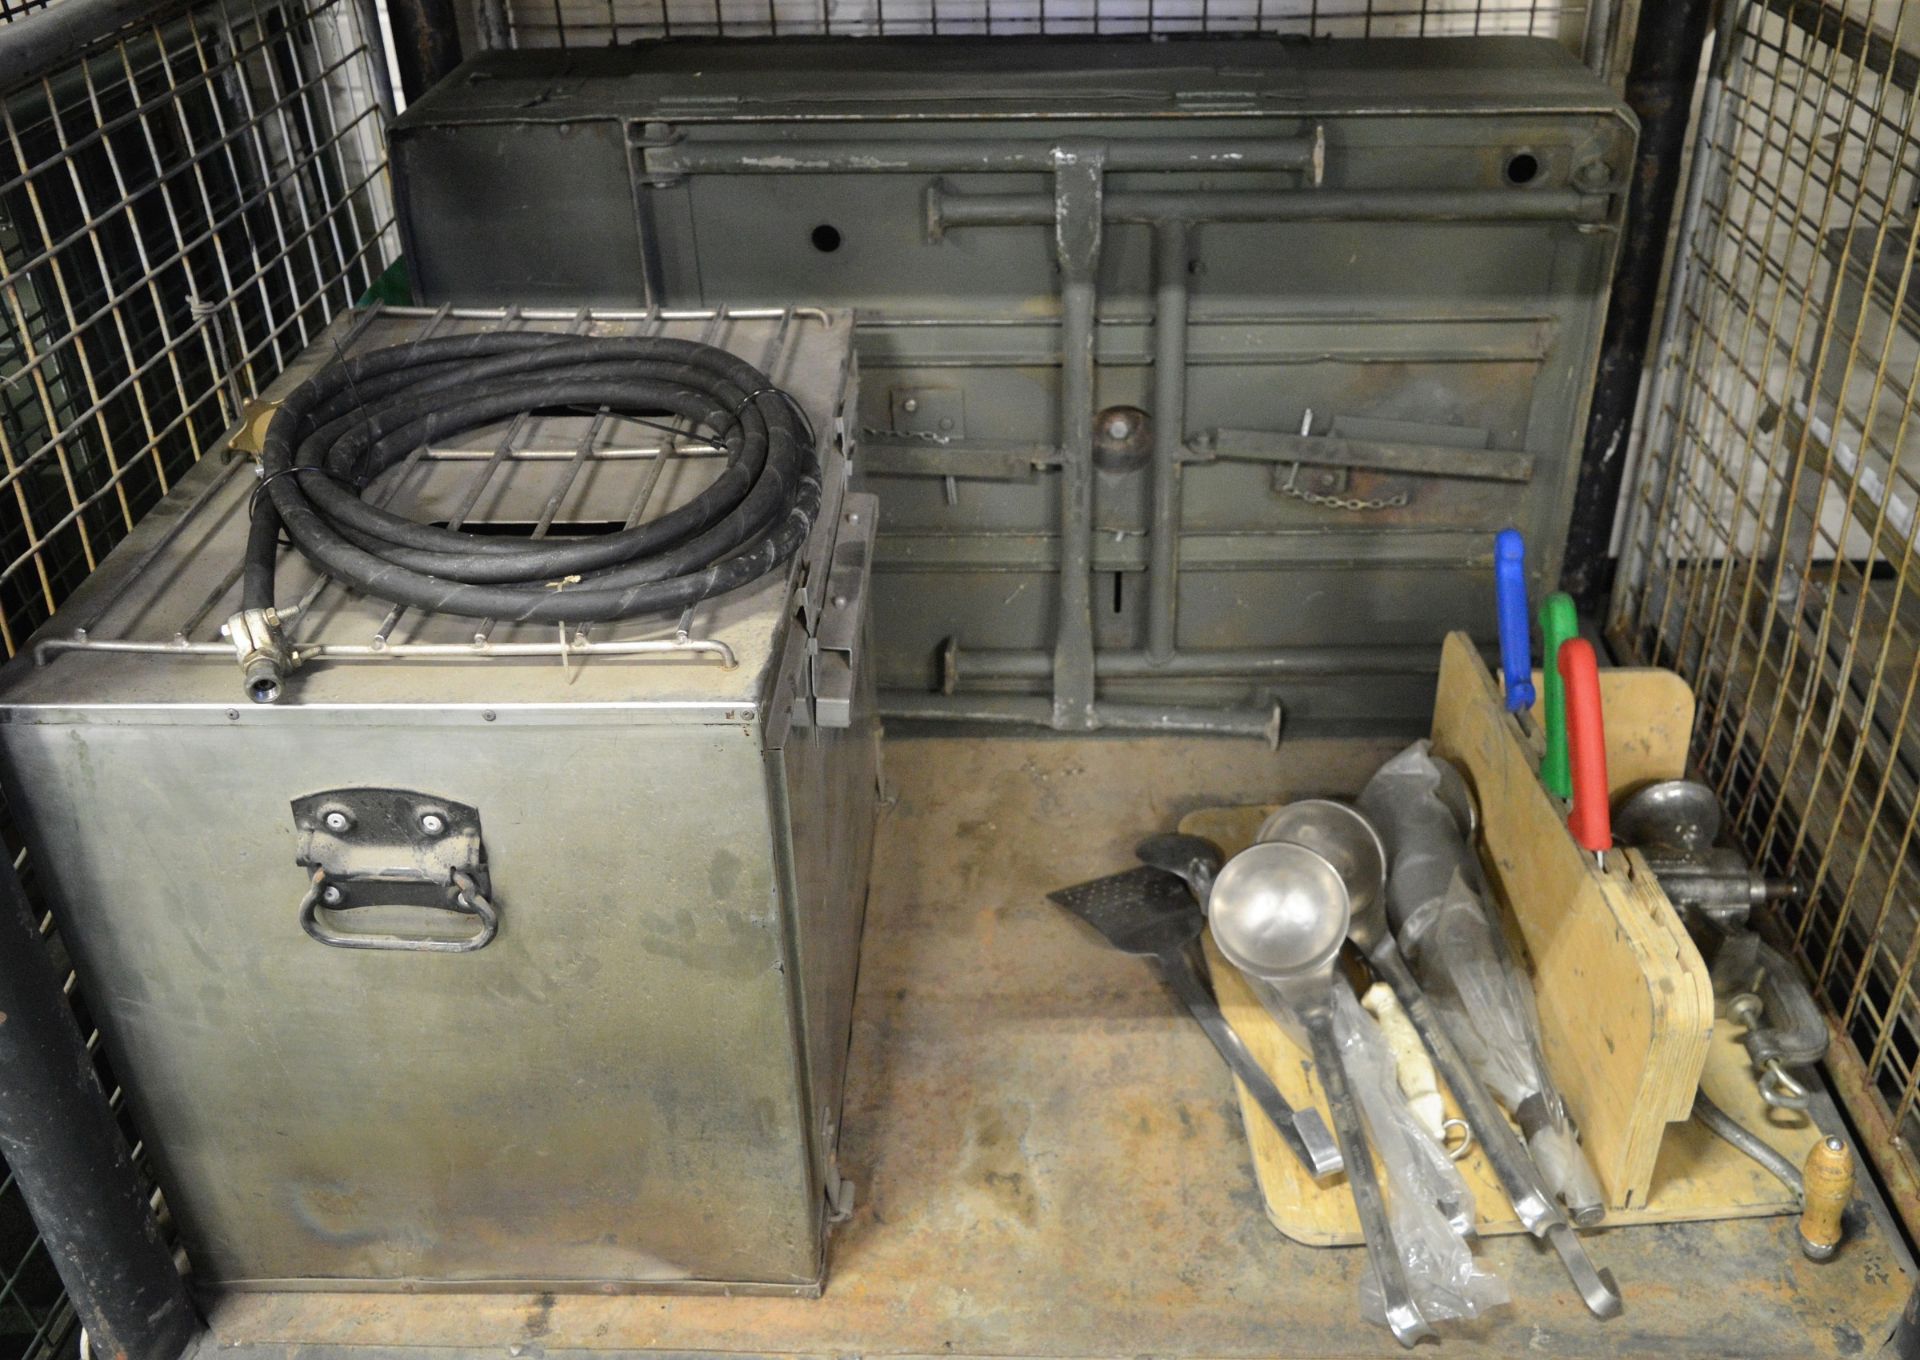 Field catering kit - Cooker, Oven, Utensil kit, pots, pans - Image 6 of 8